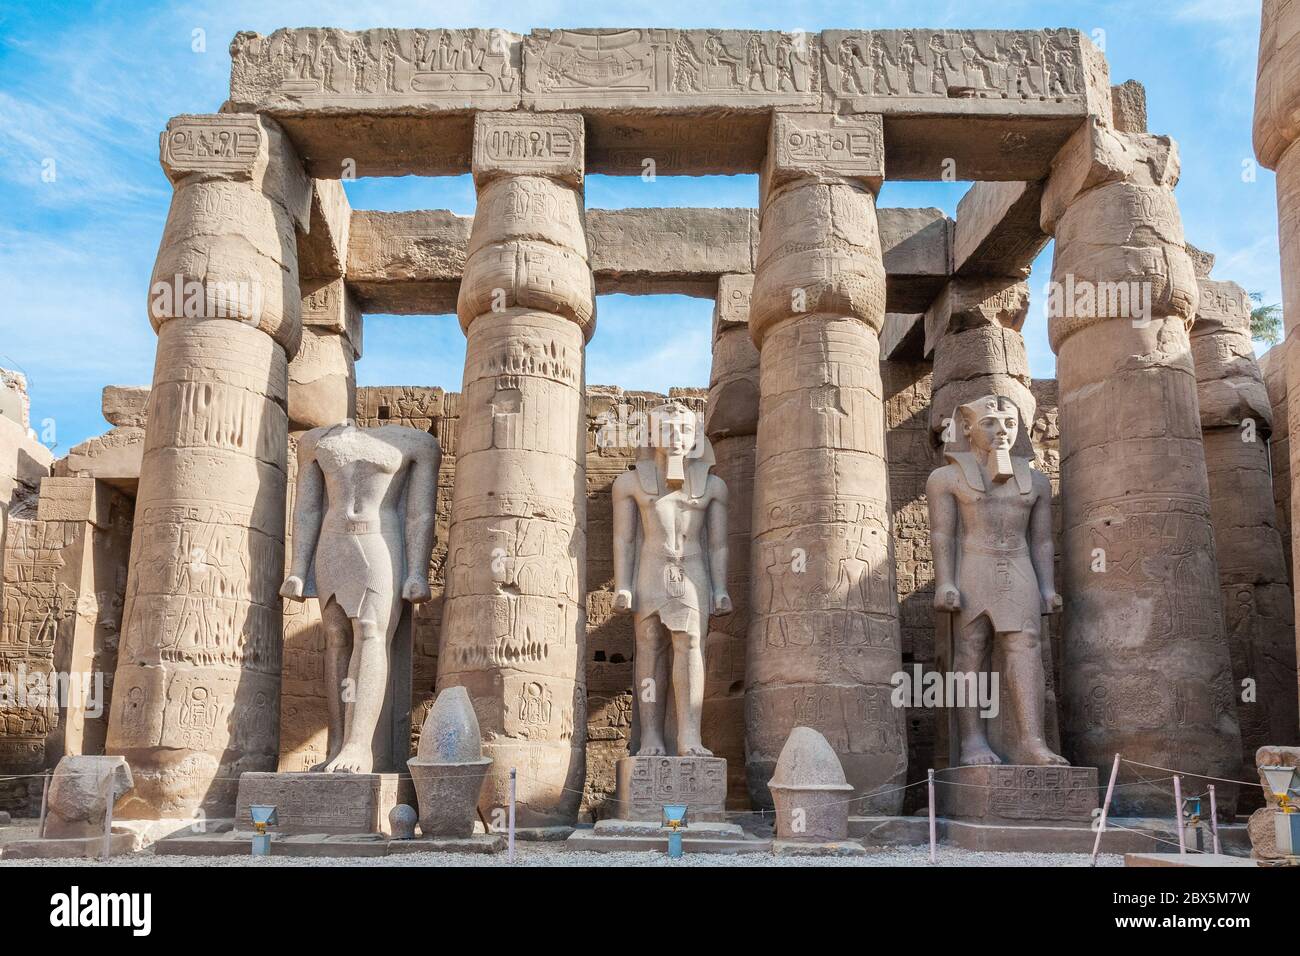 Colonnade et statues de pharaons dans le complexe du temple de Karnak, Louxor, Égypte Banque D'Images